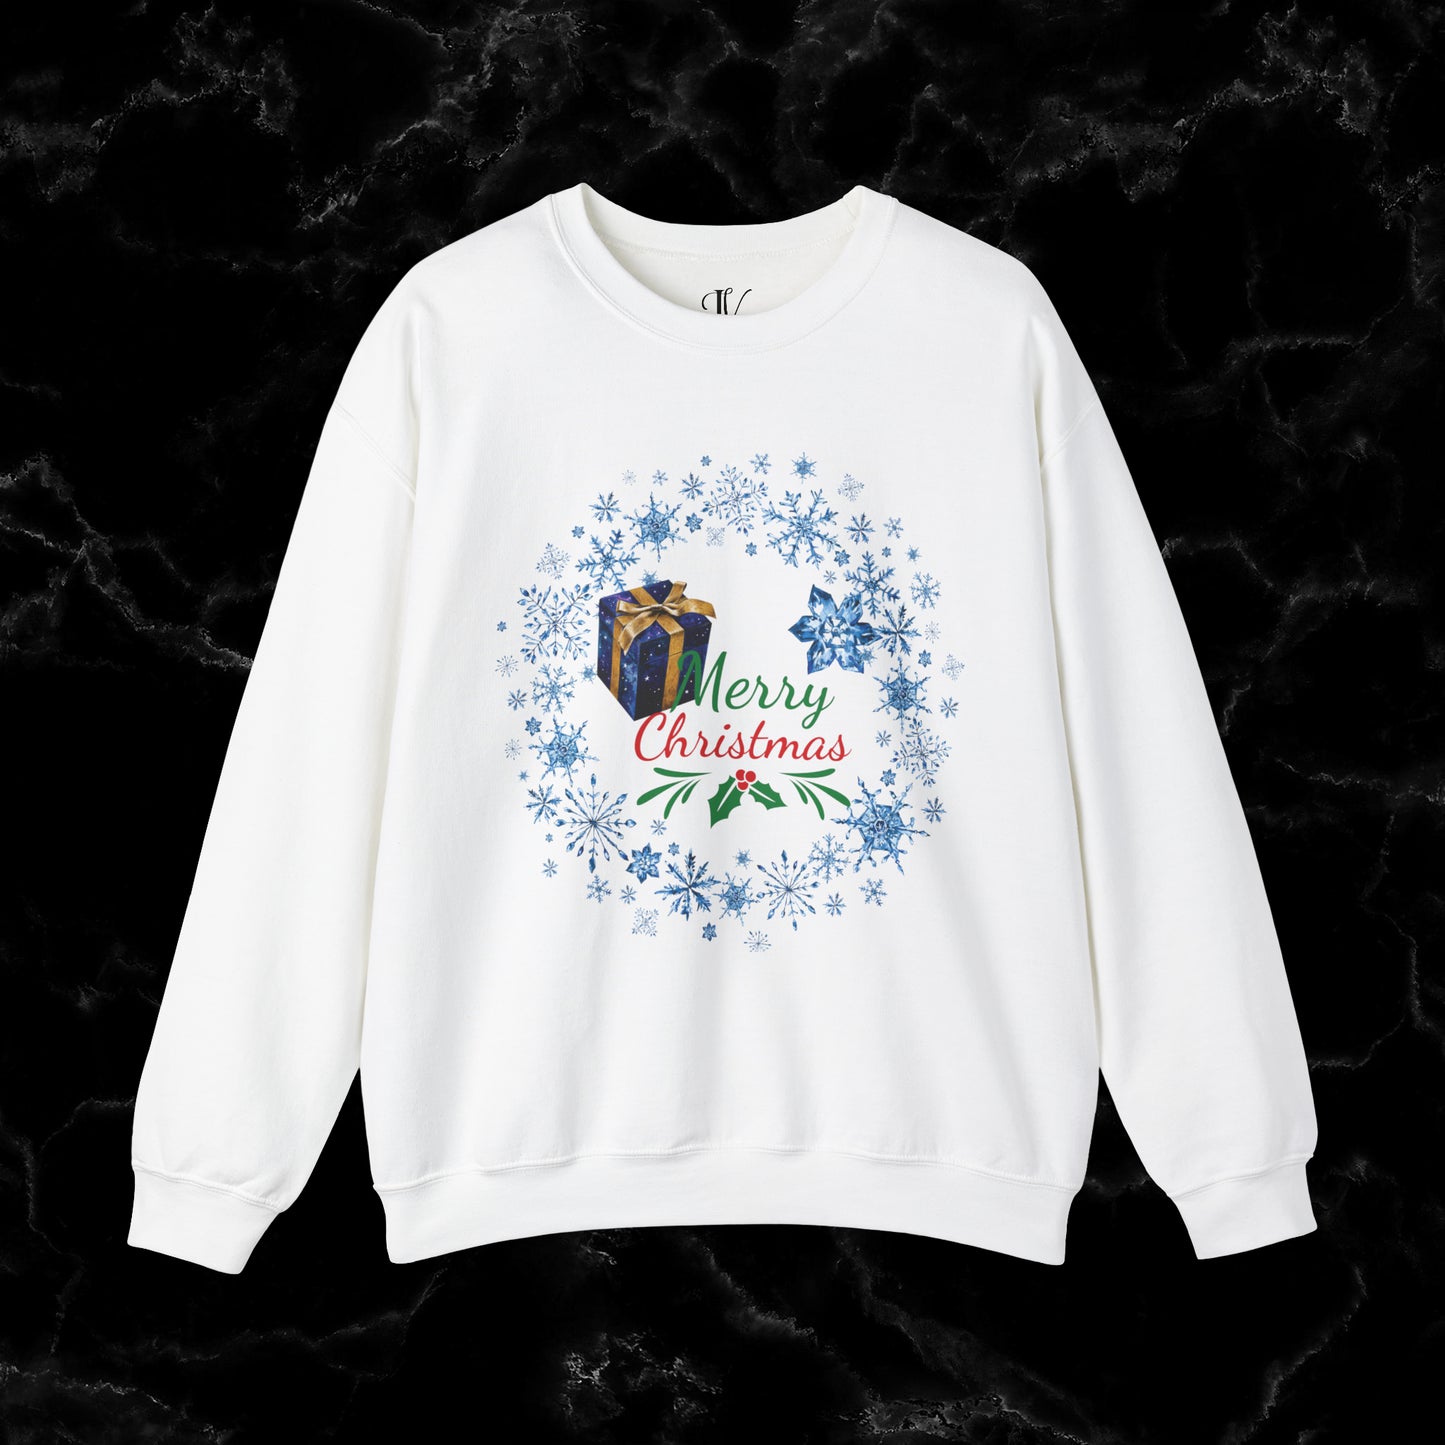 Merry Christmas Sweatshirt - Matching Christmas Shirt, Wreath Design, Holiday Gift Sweatshirt S White 